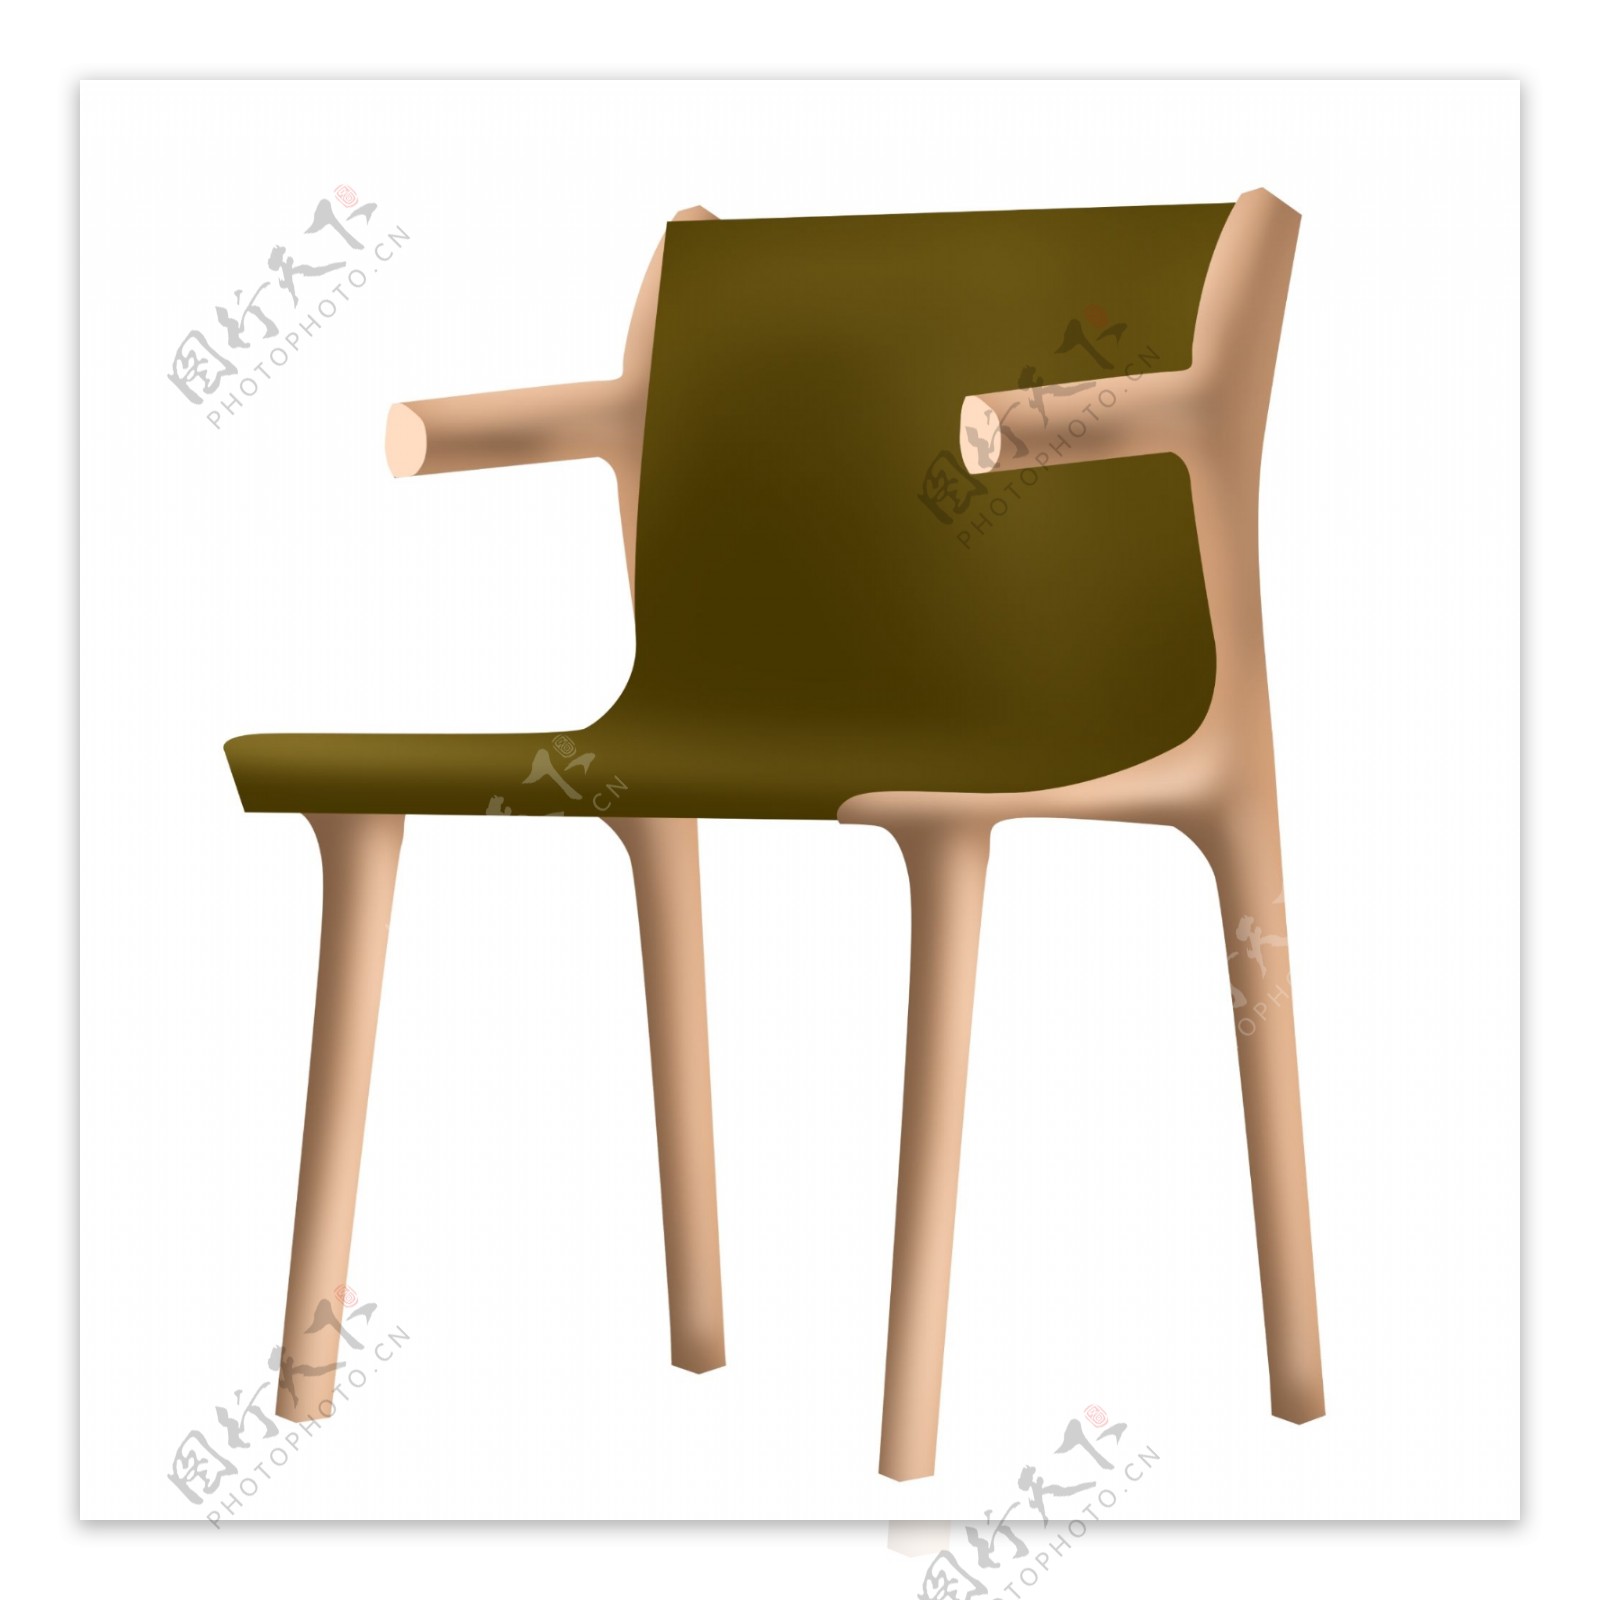 一把木质椅子插画